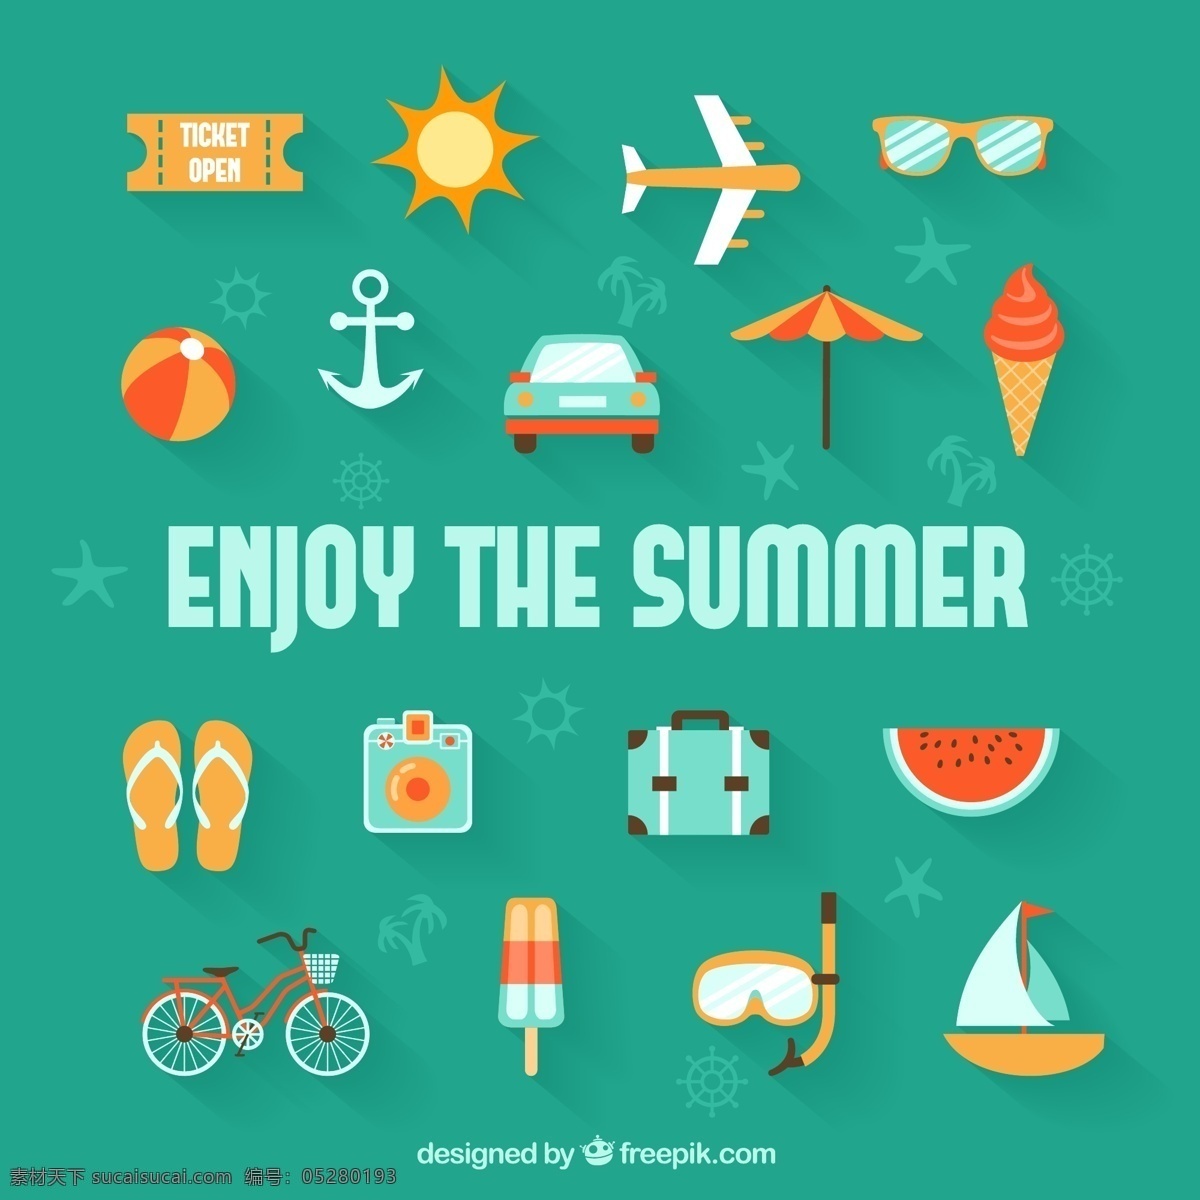 享受夏天 汽车 夏季 旅游 图标 太阳 自行车 冰淇淋 飞机 船 锚 冰 球 度假 汽车图标 西瓜 奶油 假日 享受 青色 天蓝色